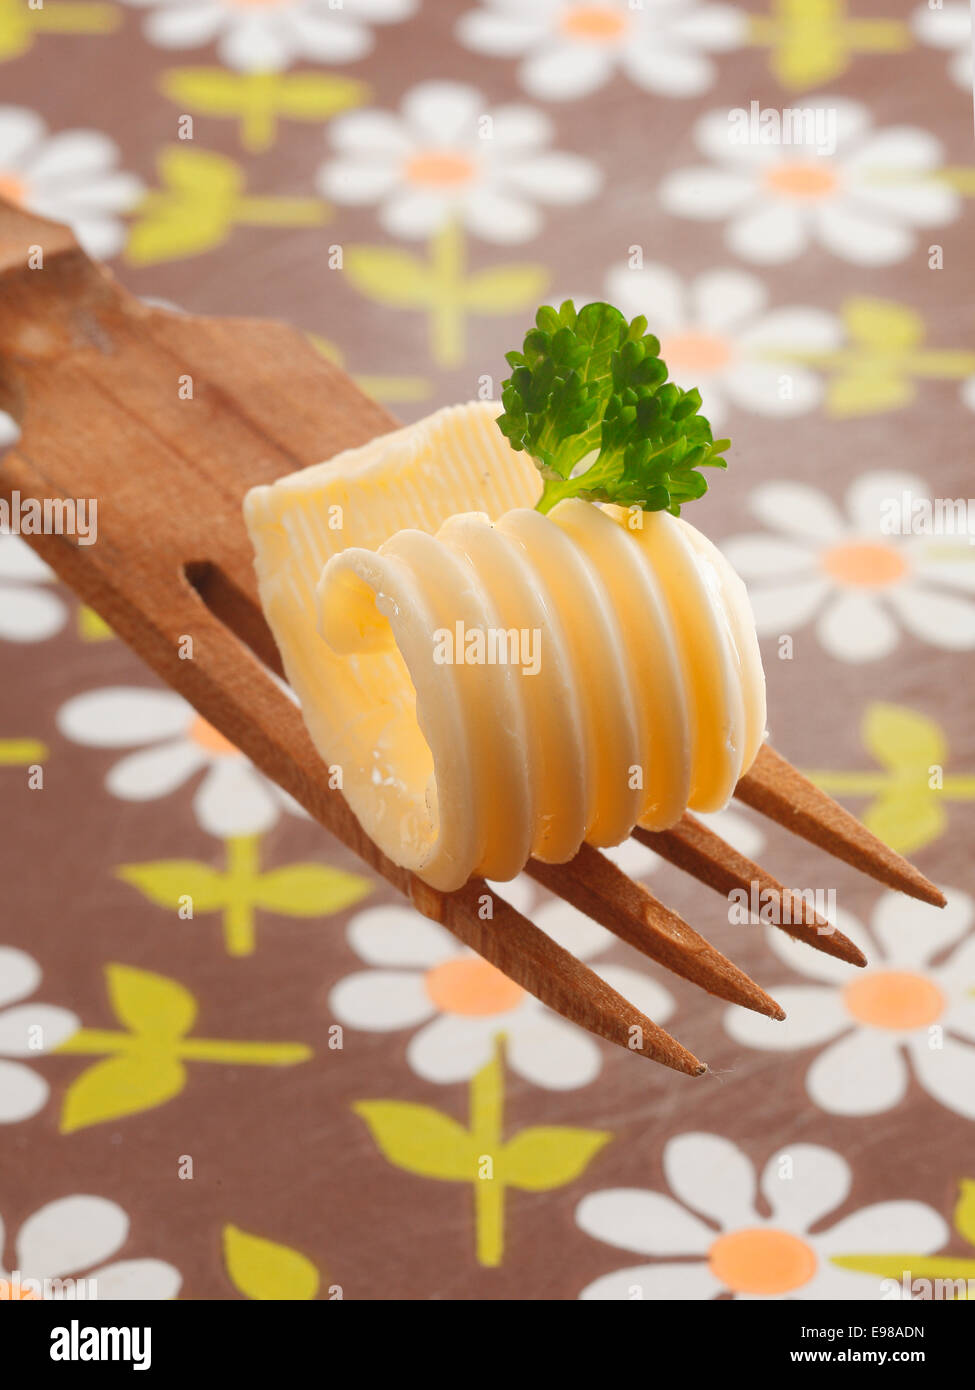 Curl décorative de beurre ou margarine roulé garni de menthe fraîche étant offert sur une fourchette à salade en bois avec une nappe floral background Banque D'Images